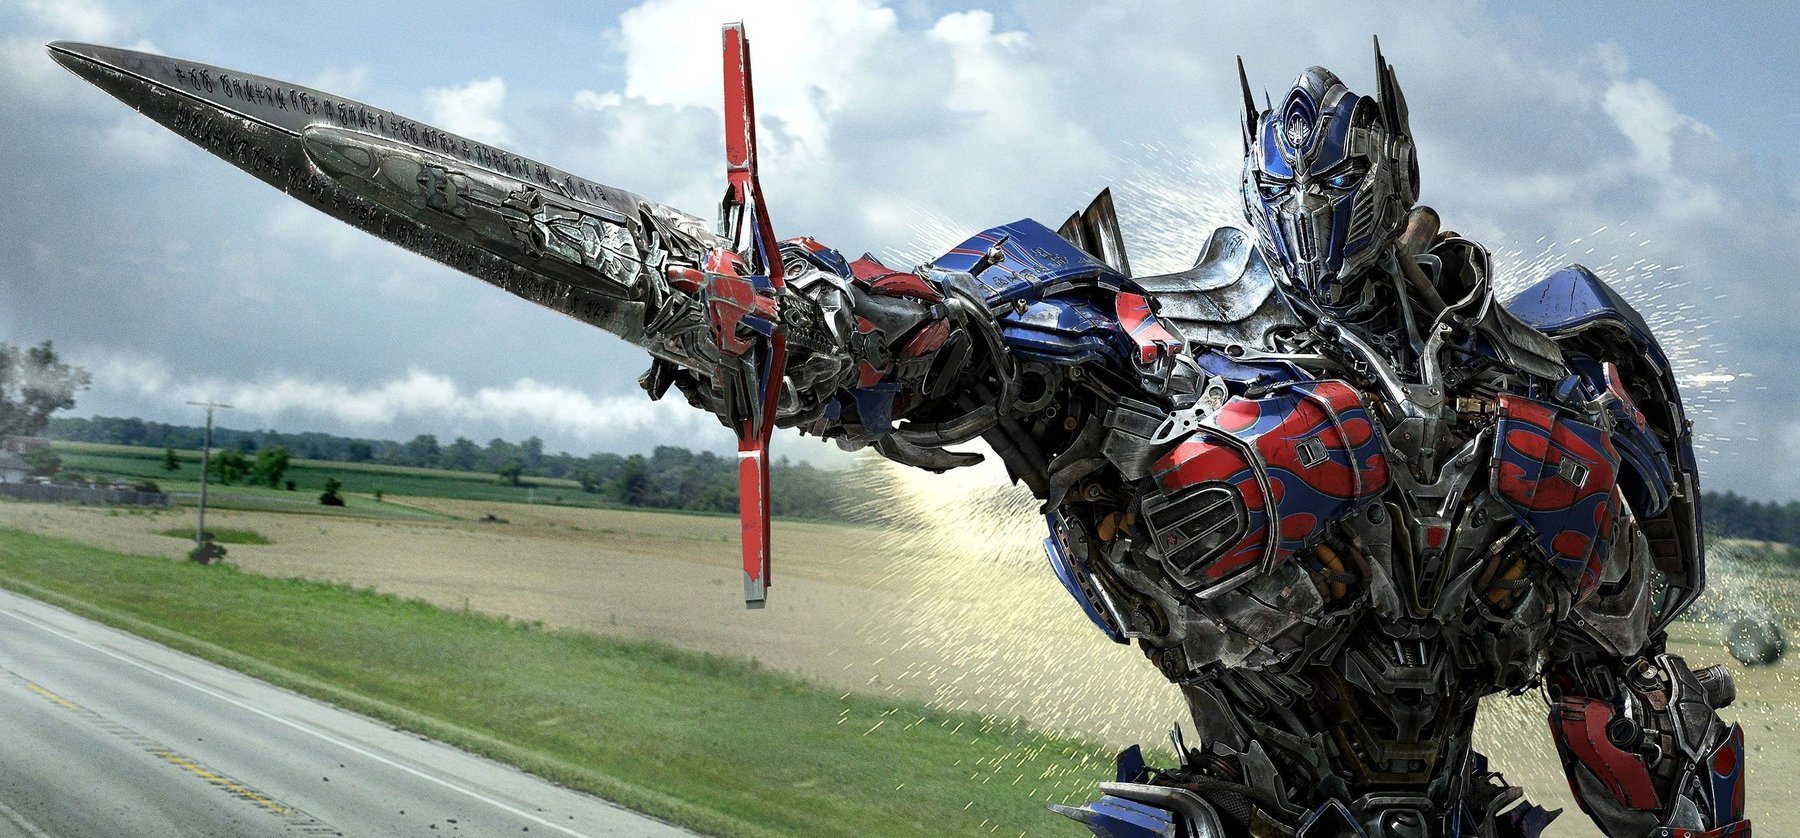 Hivatalos: jön az új Transformers-film – de van egy rettenetes hírünk is a rajongóknak